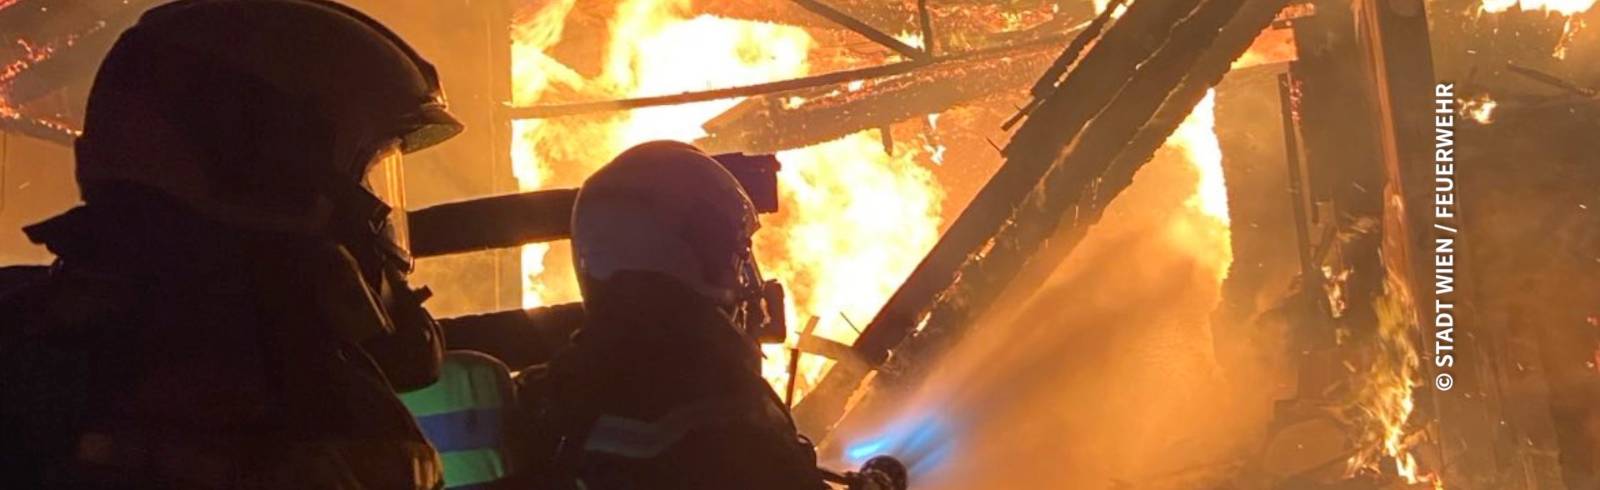 Rudolfsheim-Fünfhaus: Mann bei Wohnungsbrand schwer verletzt